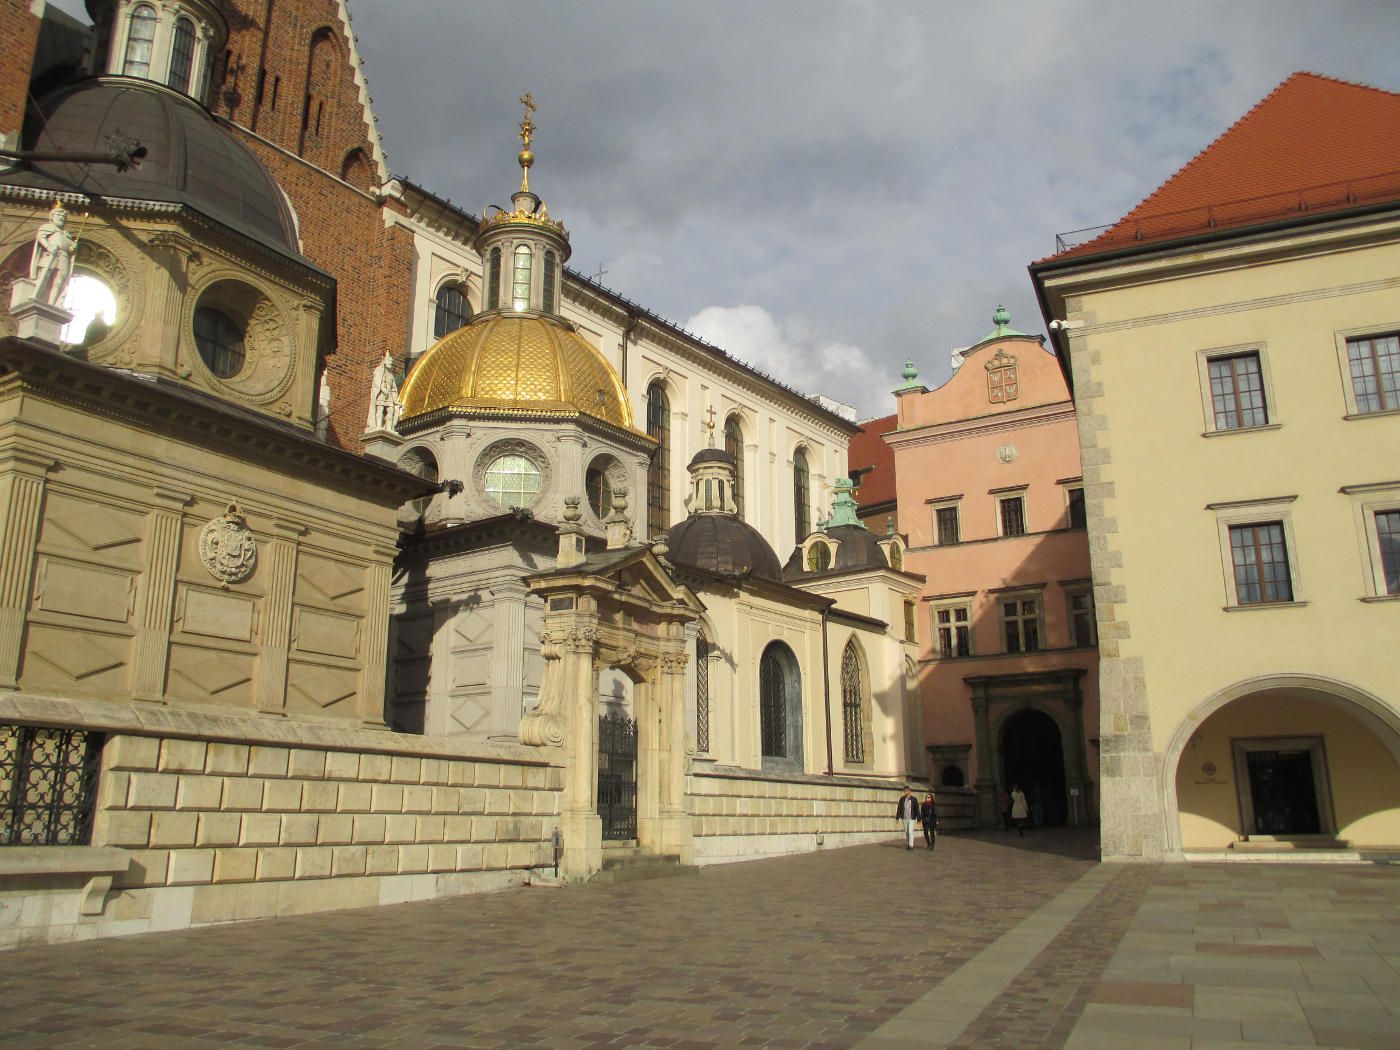 Вавельский замок в Кракове